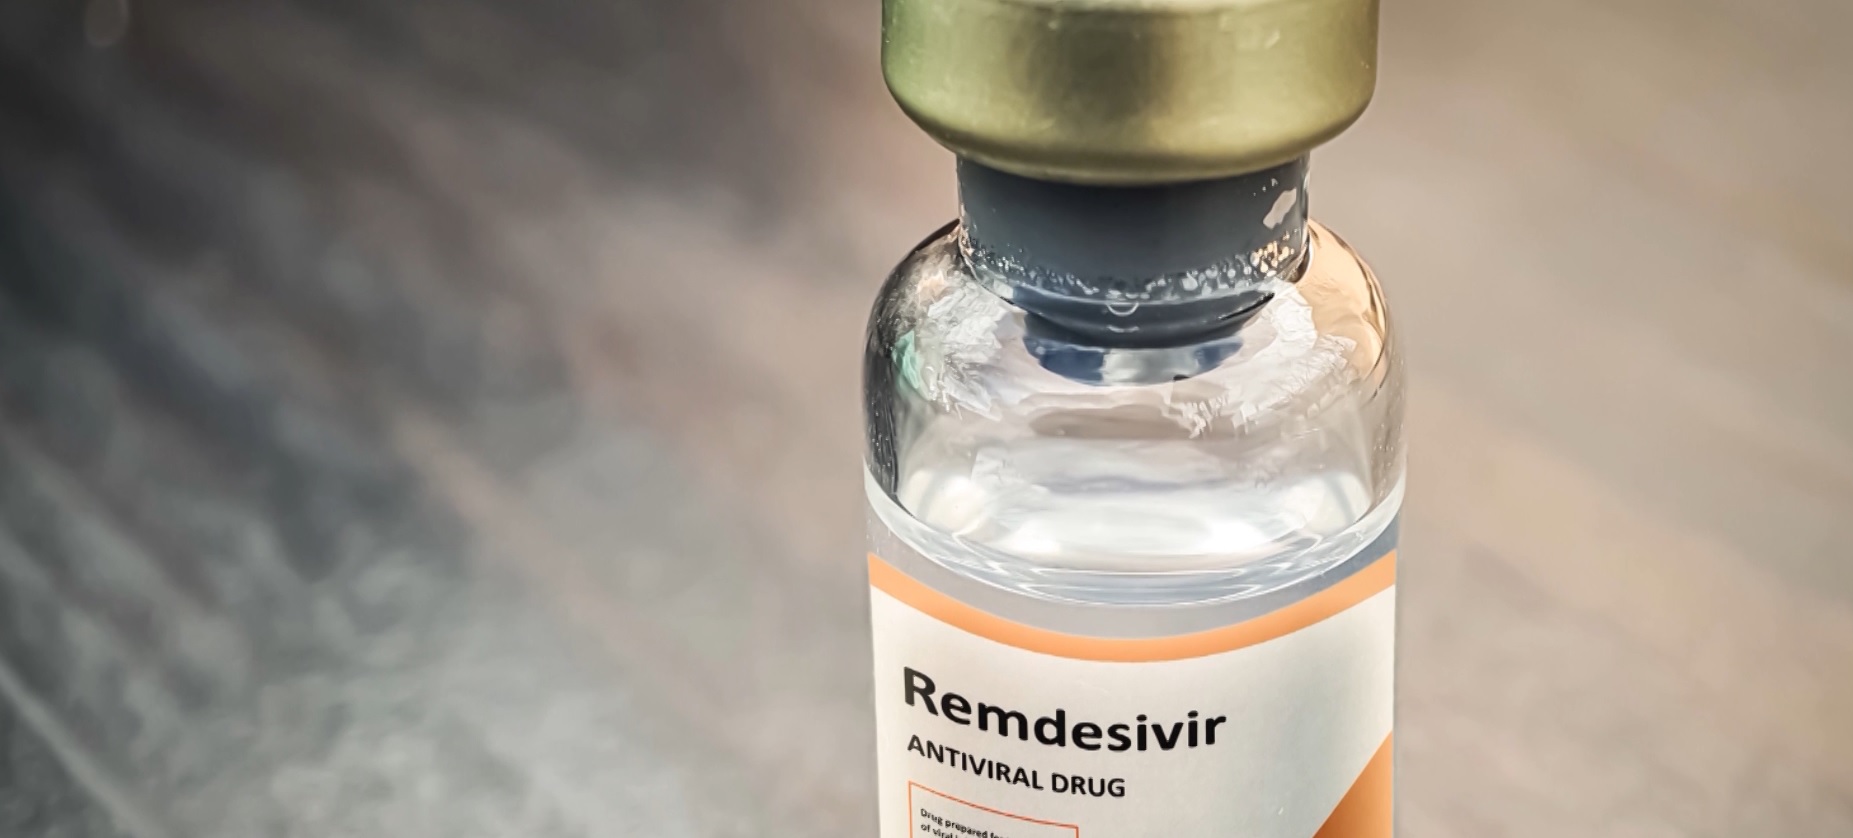 भारतको एक र नेपालका दुई कम्पनीलाई रेम्डिसिभिर नामक औषधि आयात अनुमति